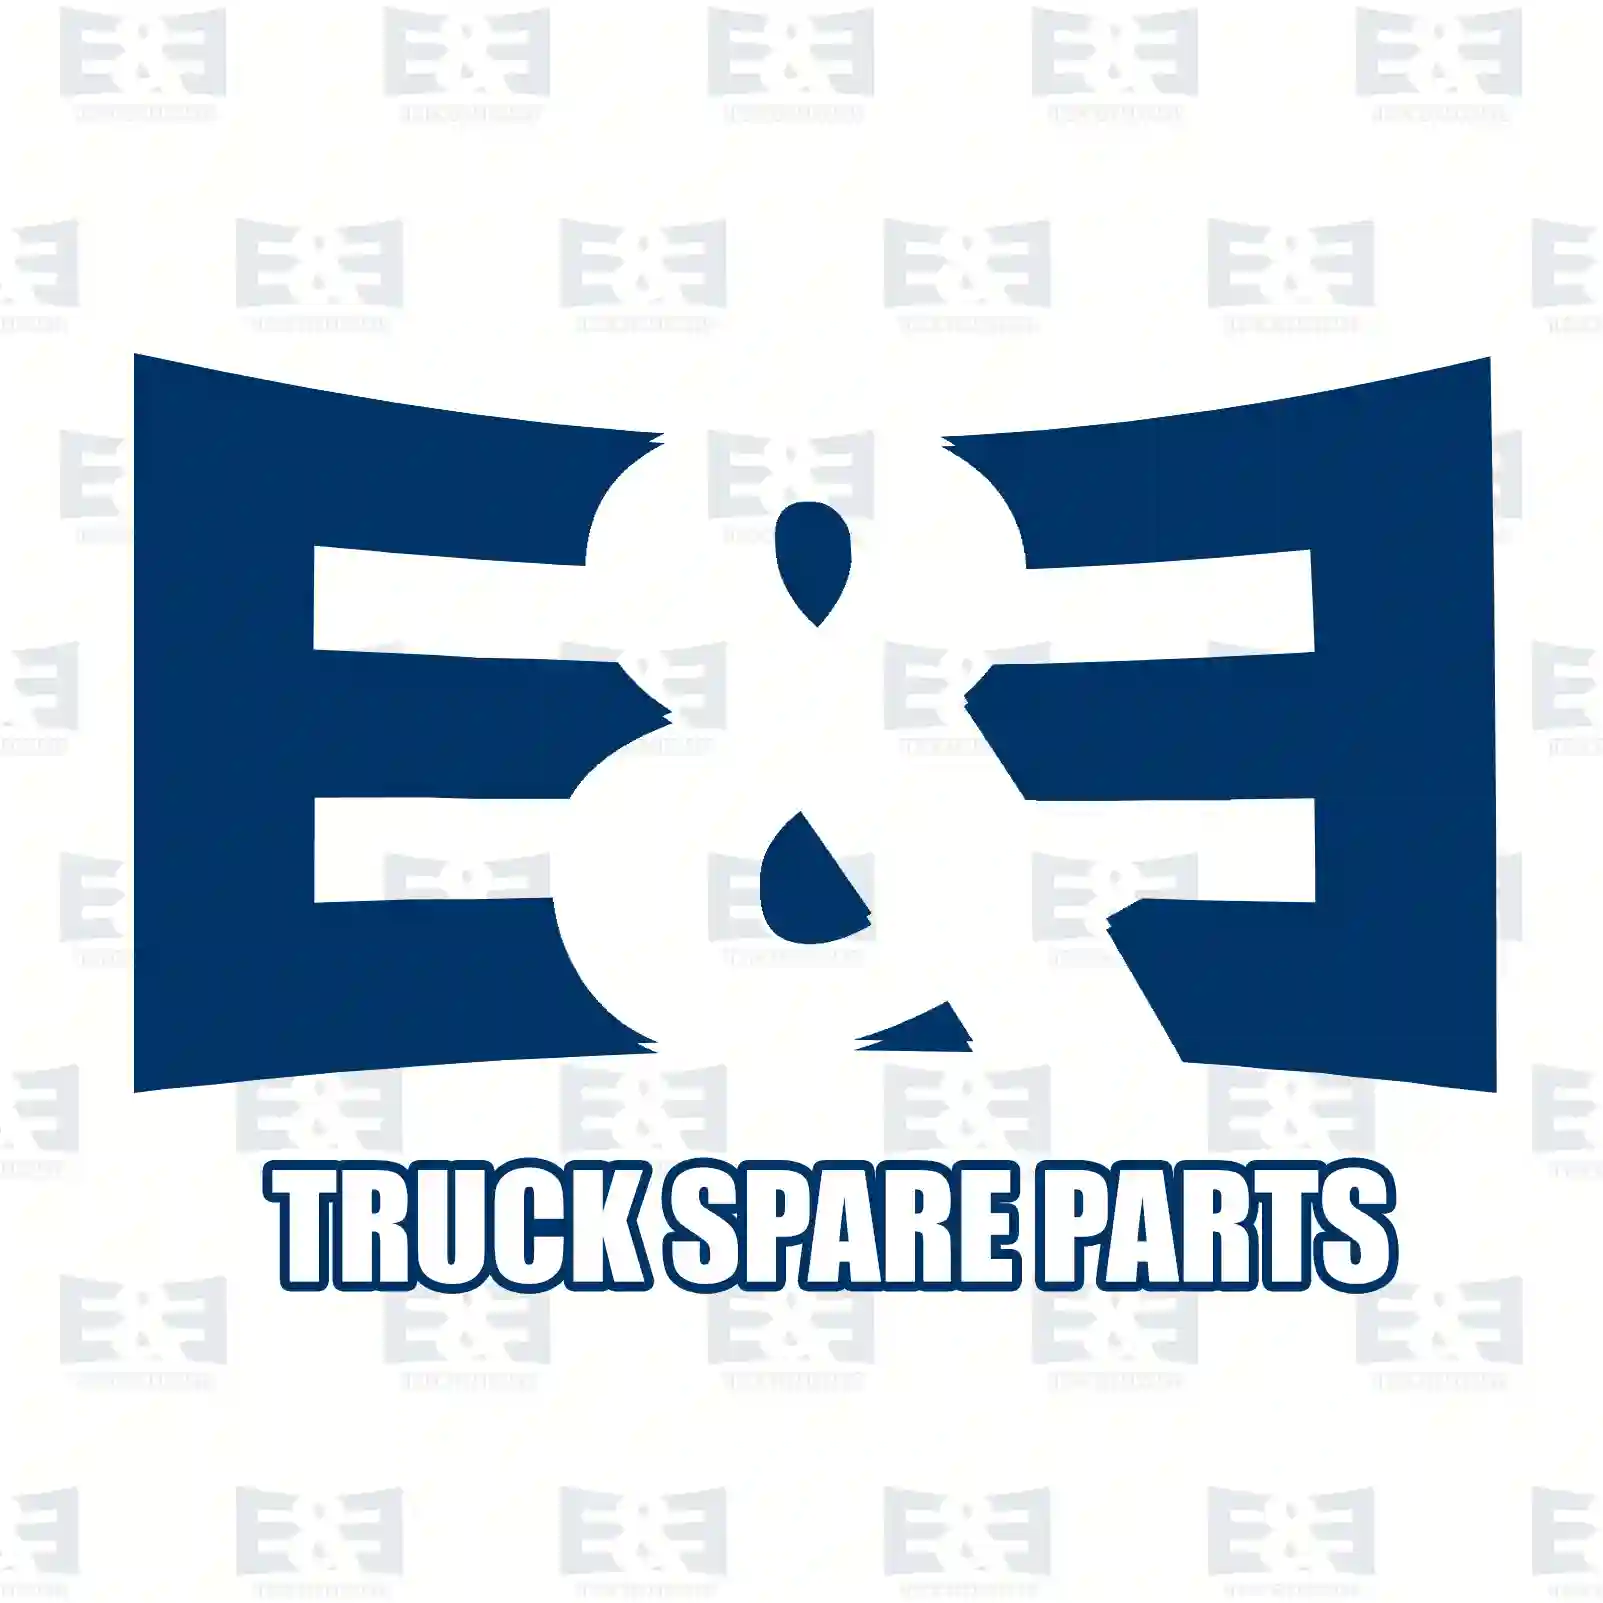 Feed pump, 2E2286896, 503135457, 5001821430, 5001821430 ||  2E2286896 E&E Truck Spare Parts | Truck Spare Parts, Auotomotive Spare Parts Feed pump, 2E2286896, 503135457, 5001821430, 5001821430 ||  2E2286896 E&E Truck Spare Parts | Truck Spare Parts, Auotomotive Spare Parts